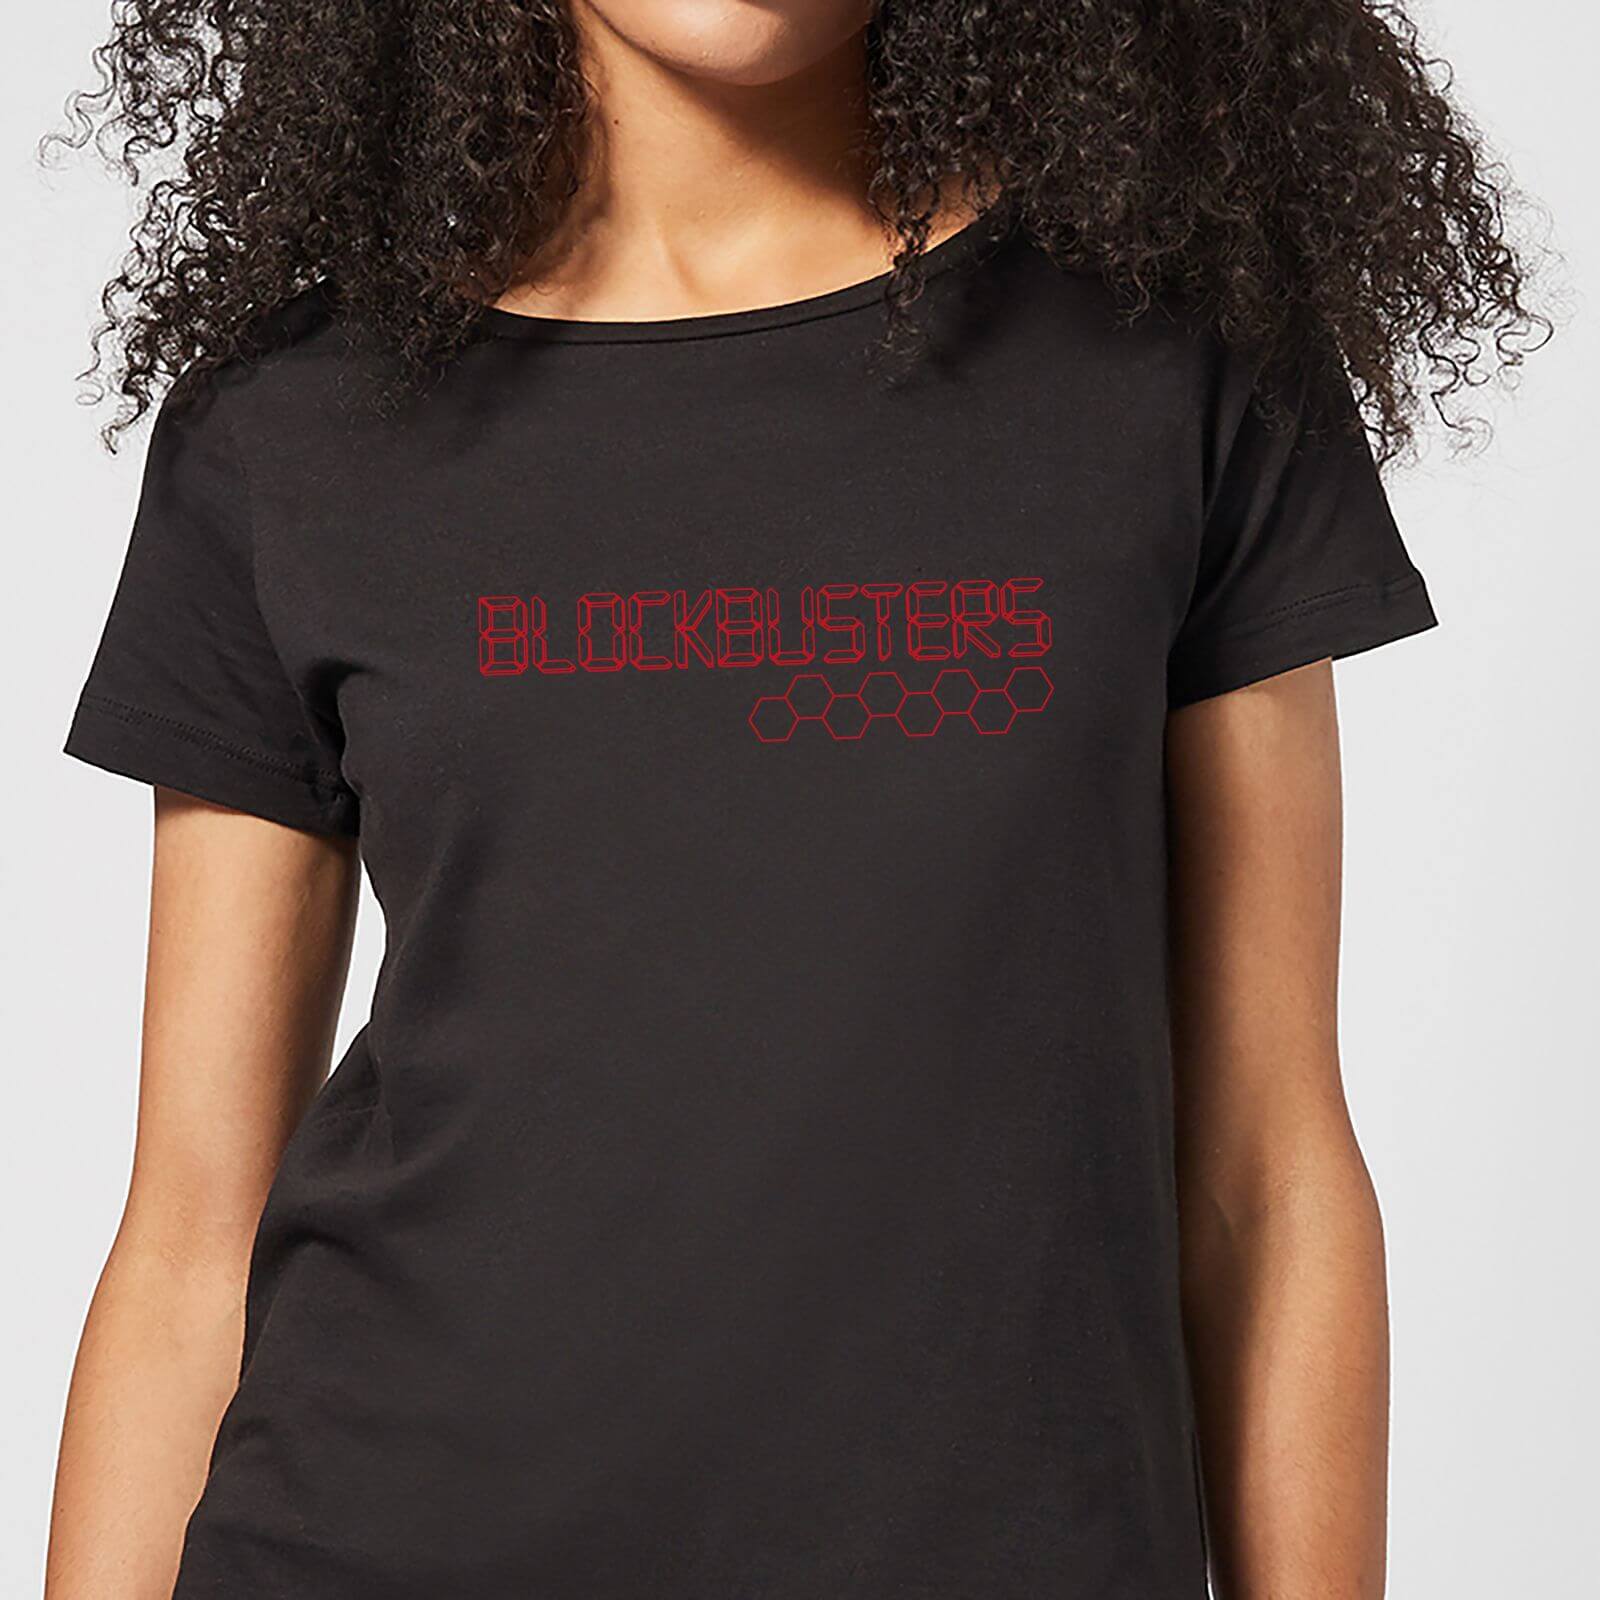 Blockbusters Logo Women's T-Shirt - Black - S - Black